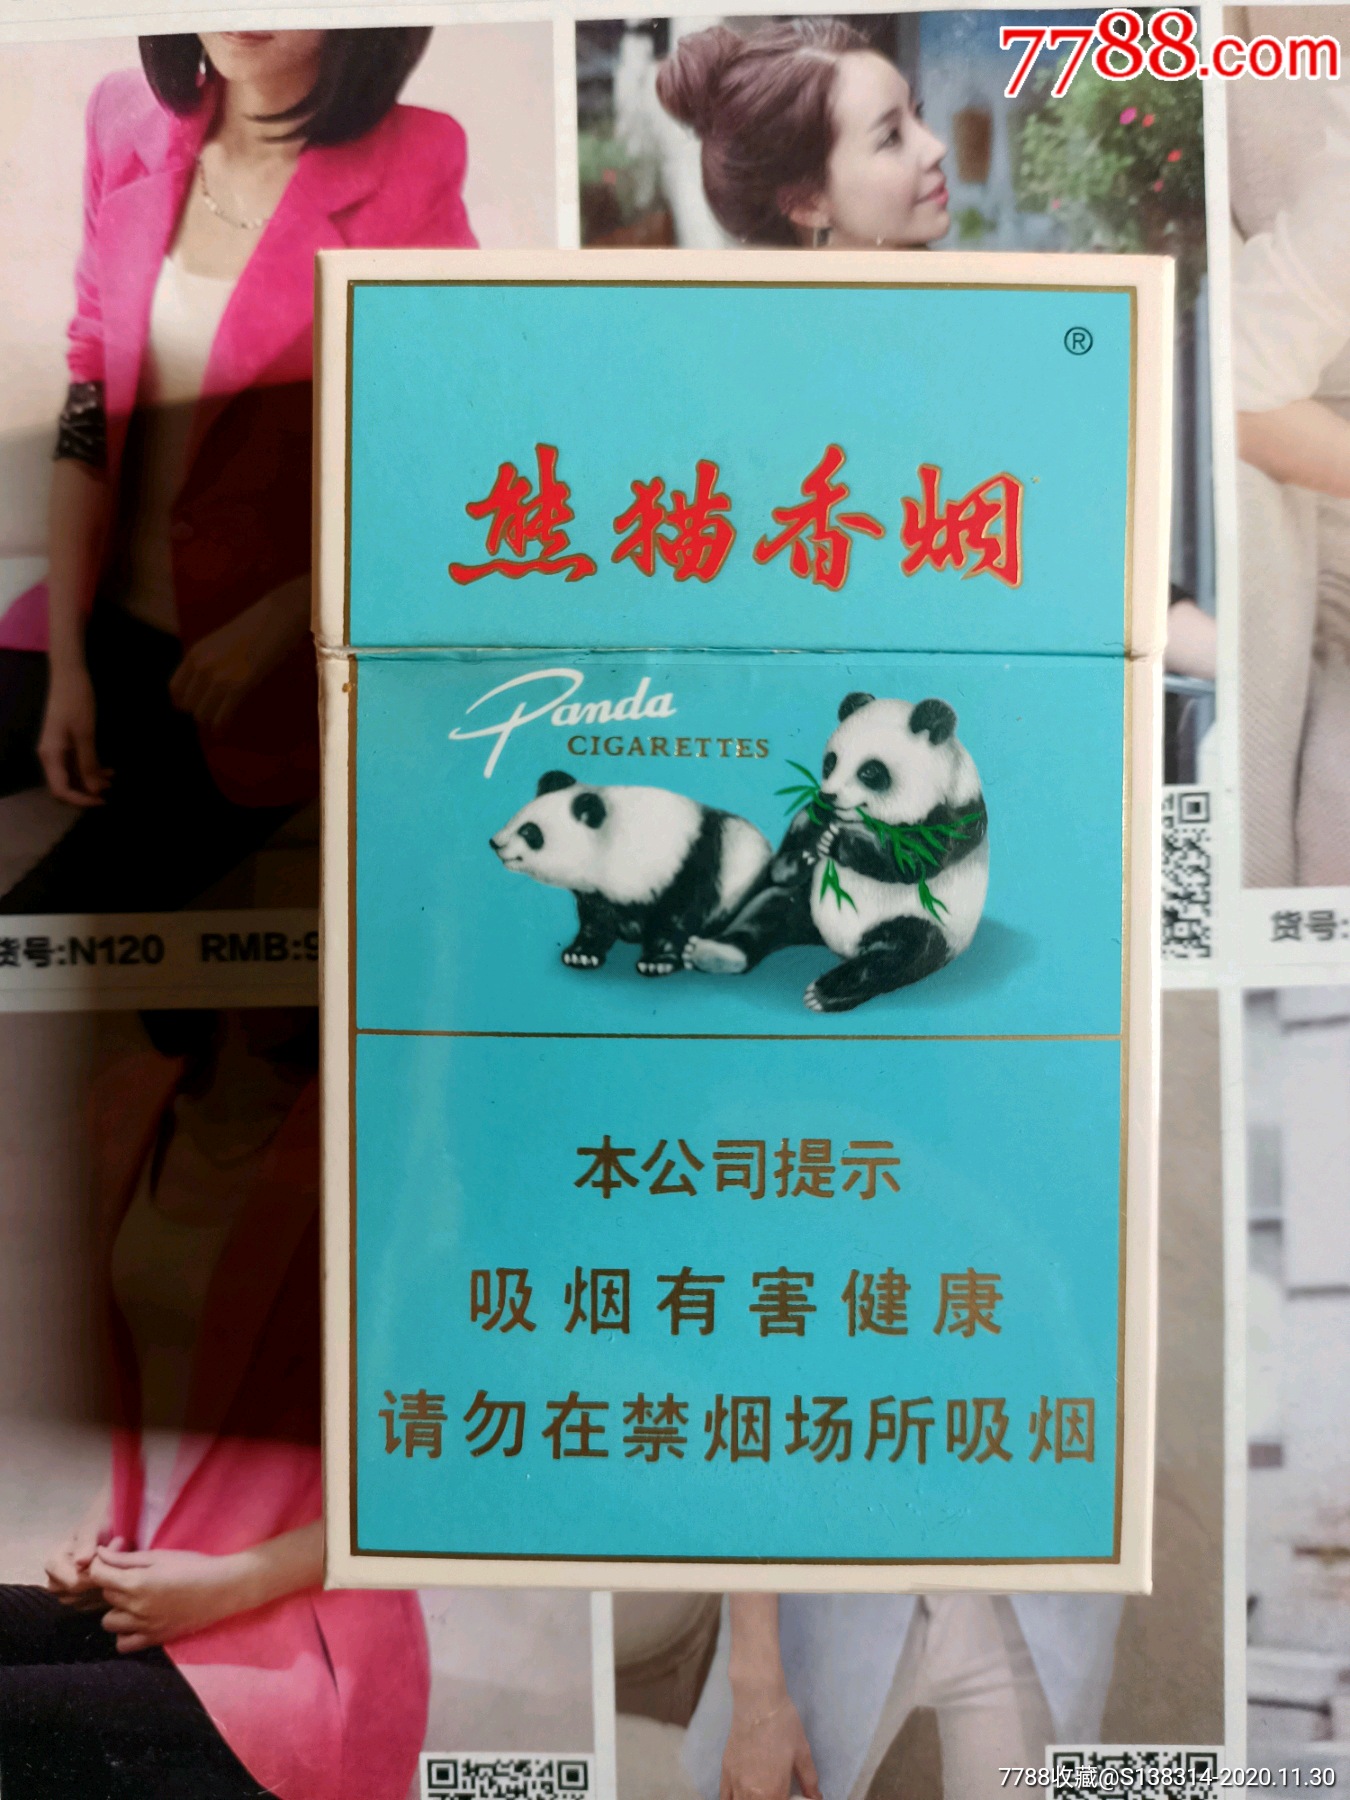 熊猫香烟价格表图,内供香烟烟中之王